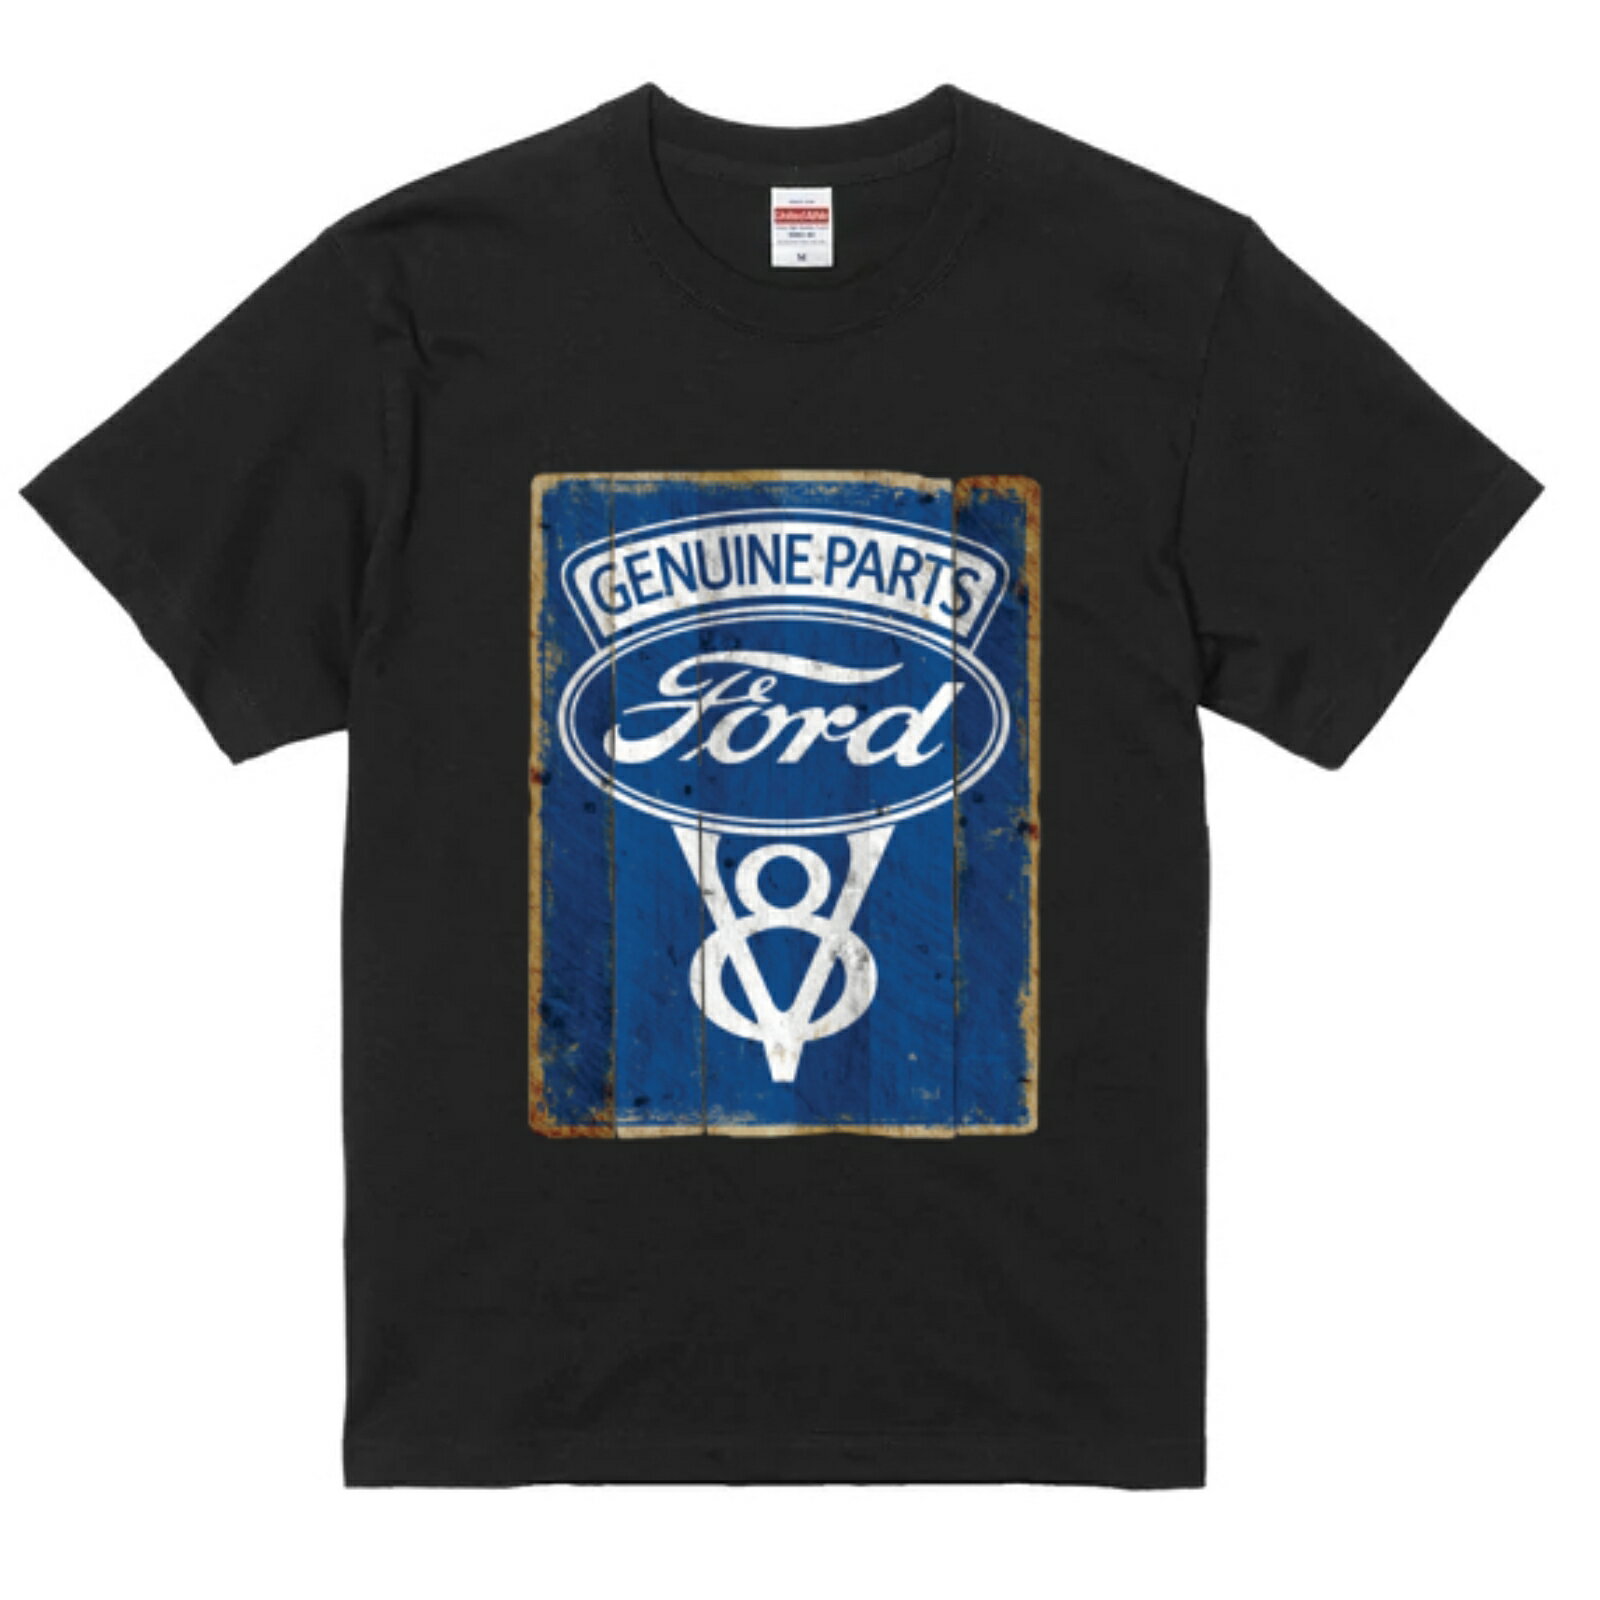 アメリカ直輸入 グラフィック デザイン Tシャツ Ford V8 ブラック or ホワイト 半袖 綿100% ストリート プリント tシャツ メンズ レディース 男女兼用 夏 海 アウトドア イベント キャンプに最適 t-shirt-car-008